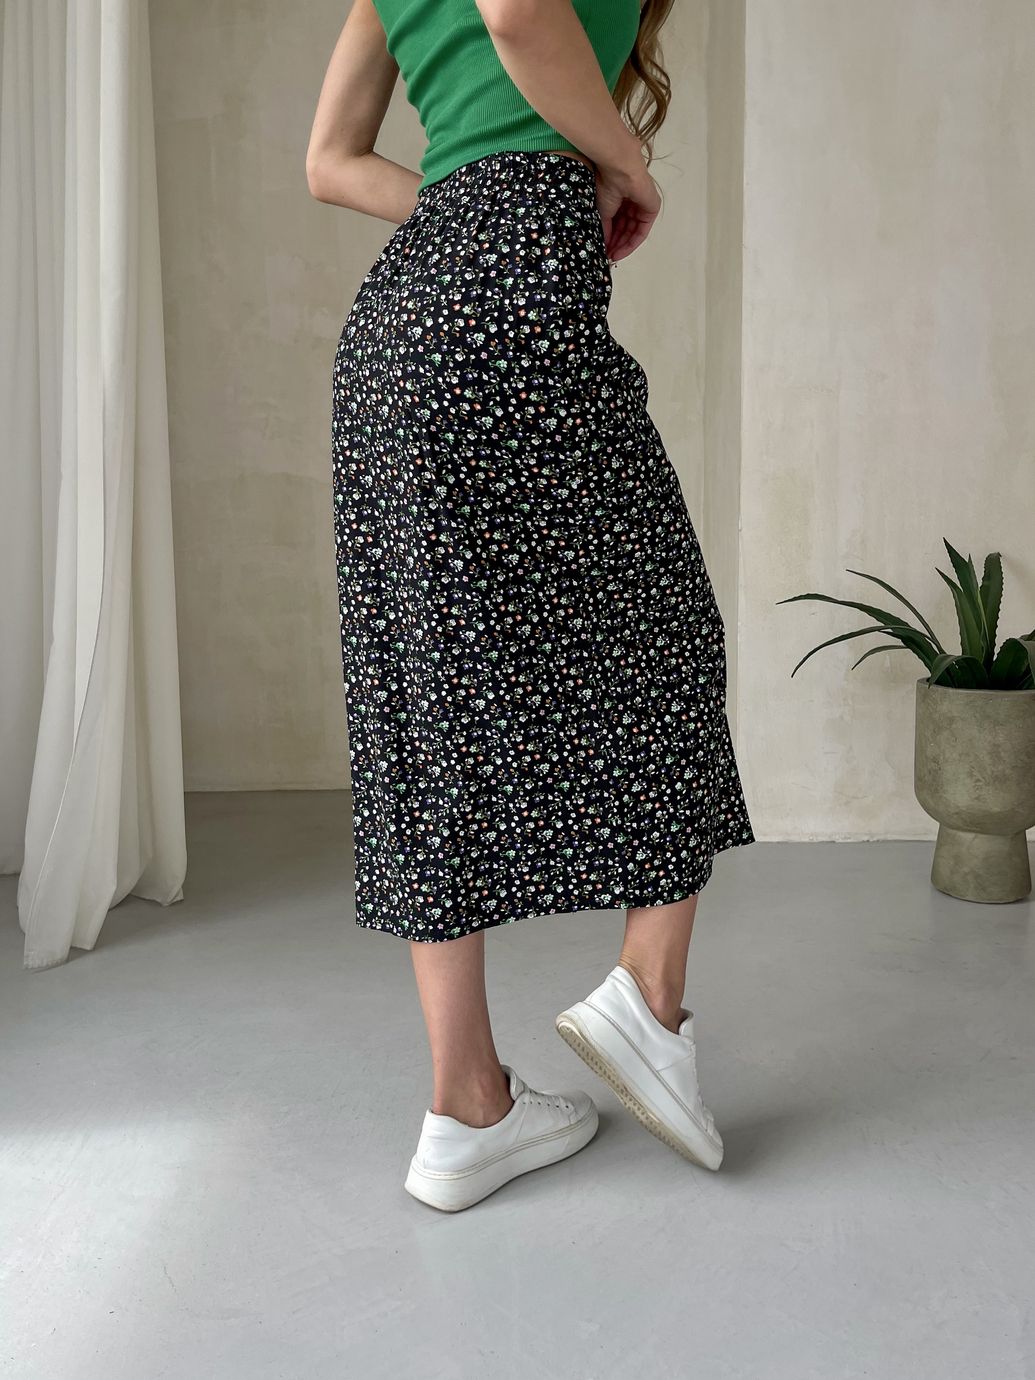 Купить Длинная женская юбка ниже колена с размером в цветочек Merlini Равенна 400000123, размер 42-44 (S-M) в интернет-магазине